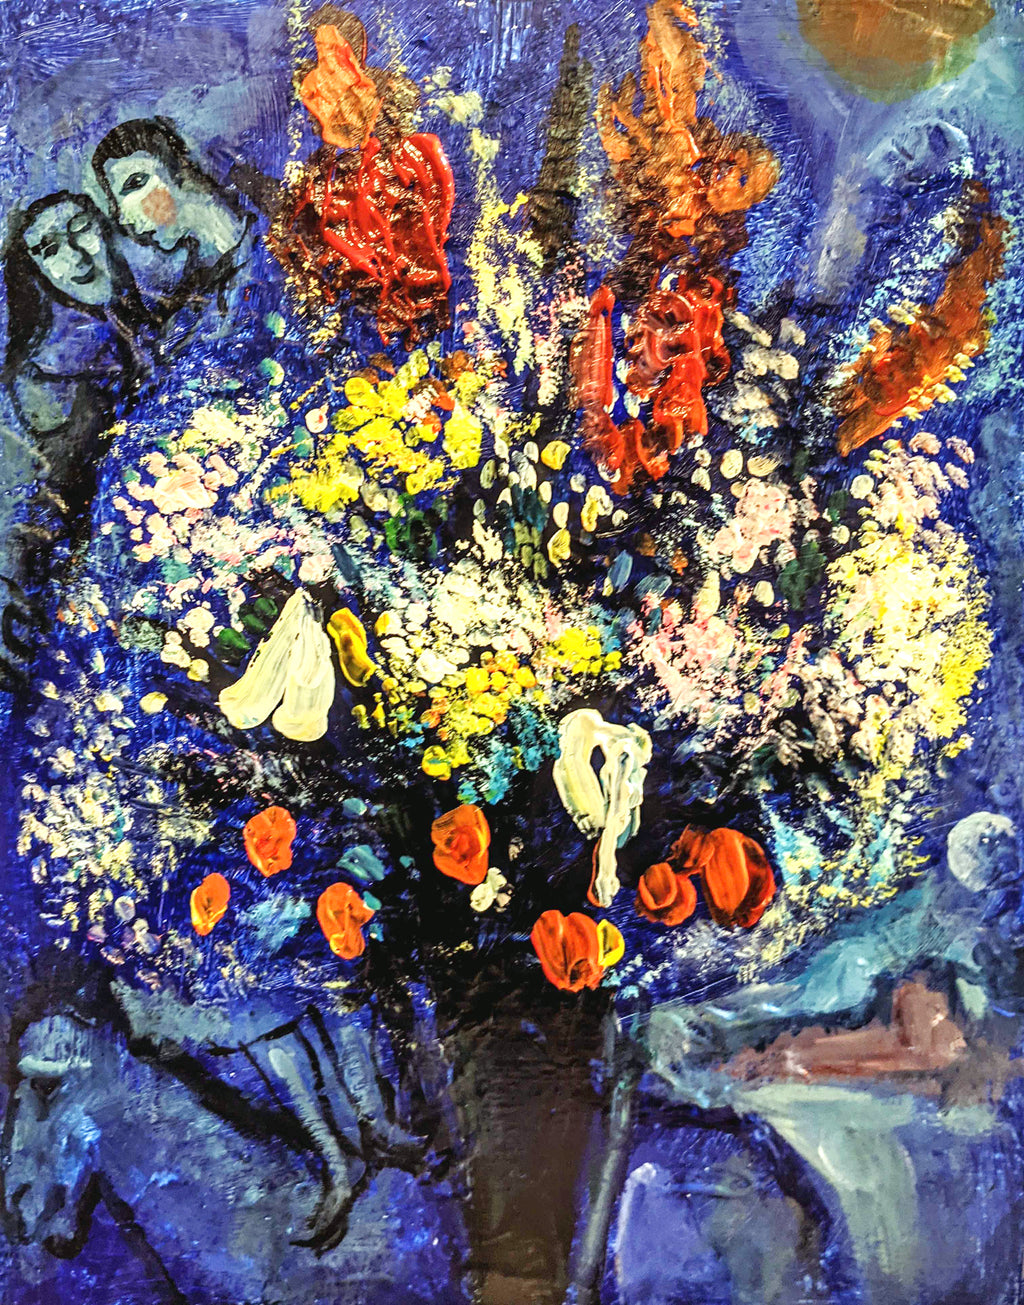 【上野/根津】3月16日(土) 13:00-16:00 | マルク・シャガール | 天に捧げる花束（Bouquet Offered to the Sky by Marc Chagall at Ueno/Nezu）